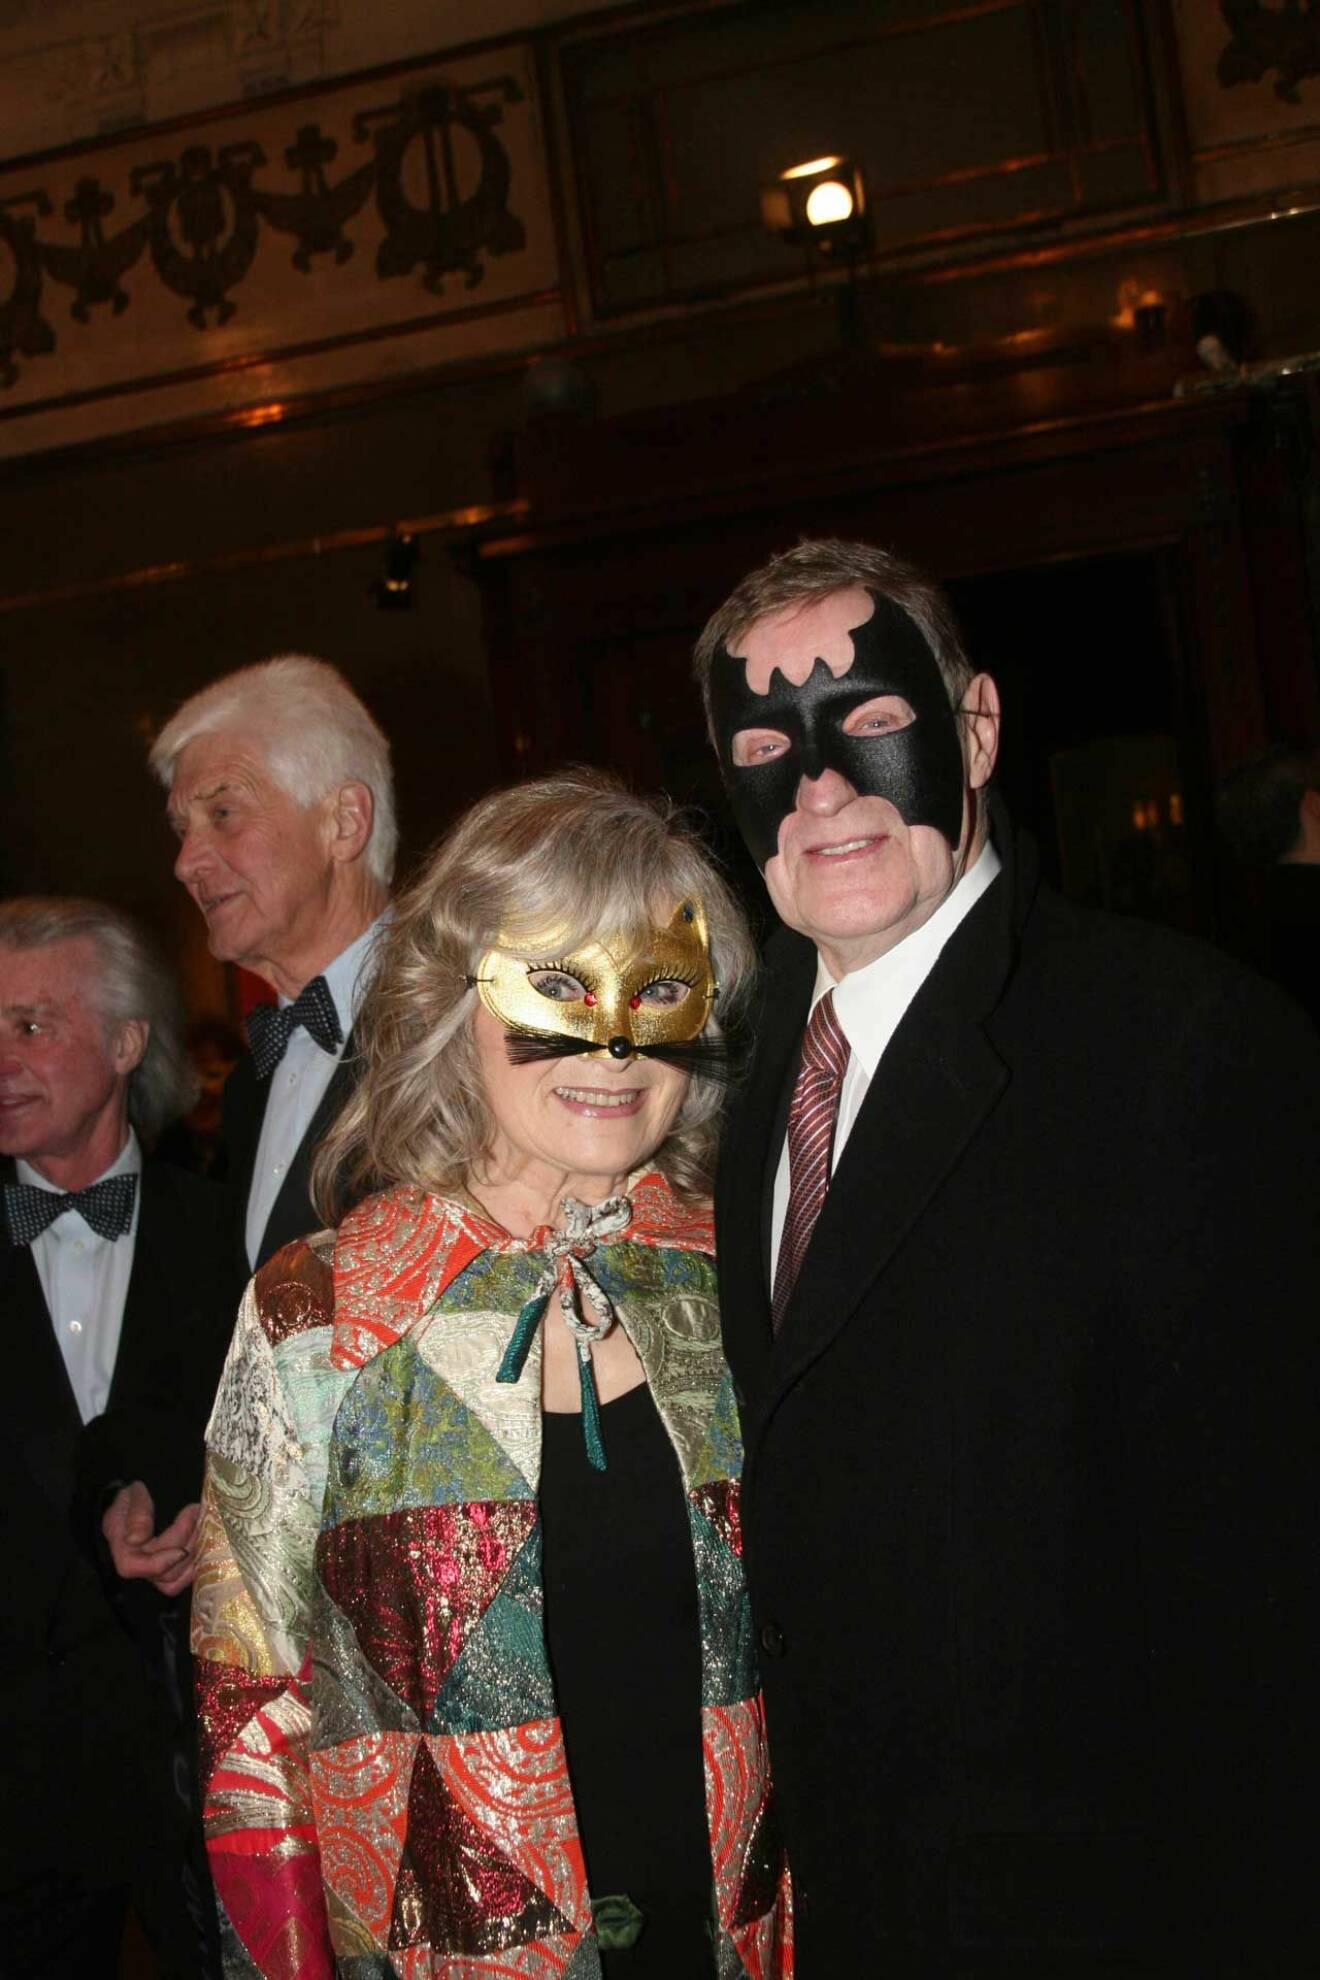 Anita Wall och Lars Lind kom tillsammans till kvällens maskeradfest.